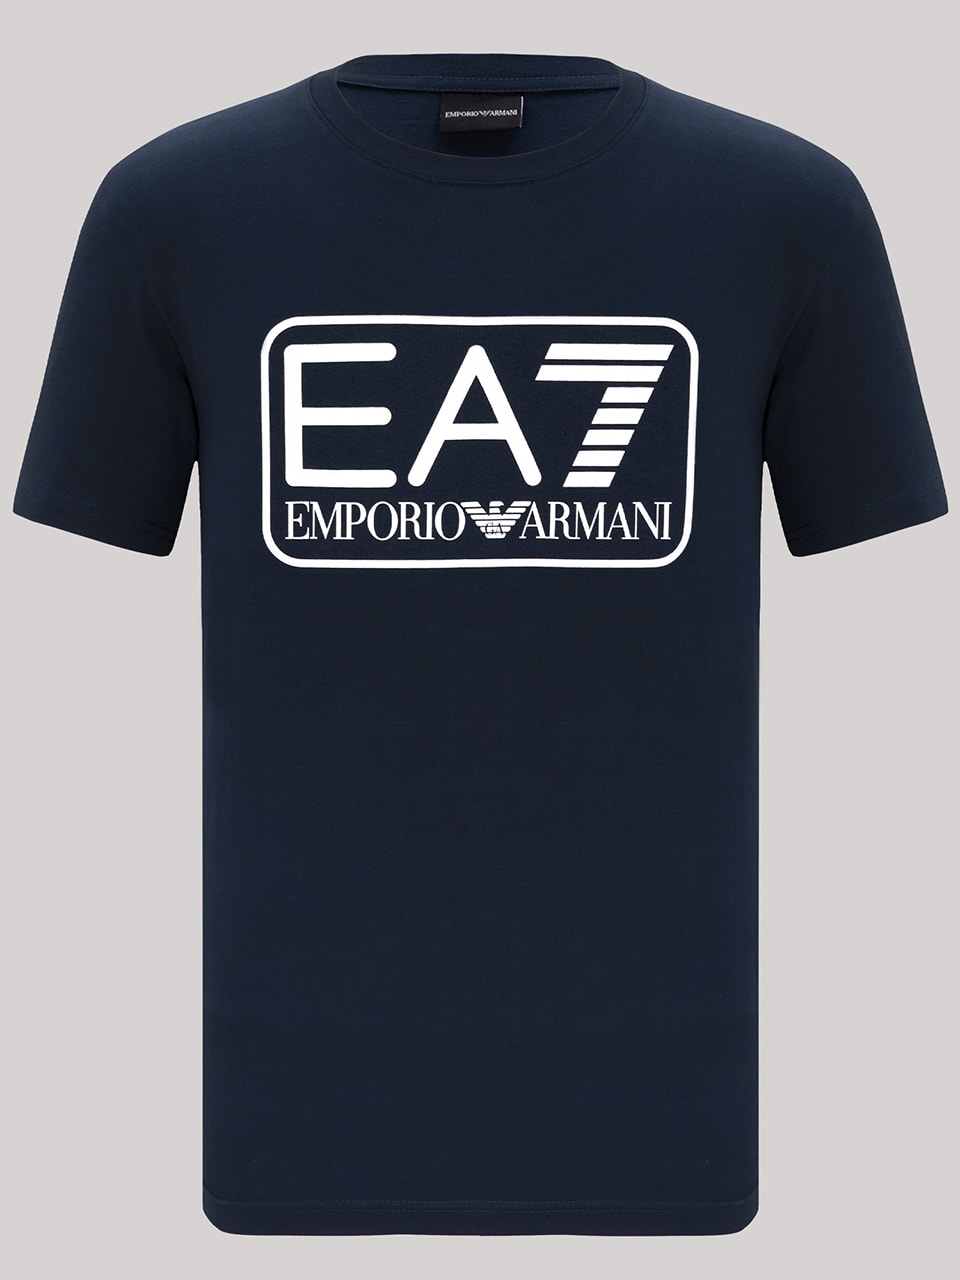 Emporio Armani EA7 t-shirt (9 av 11)